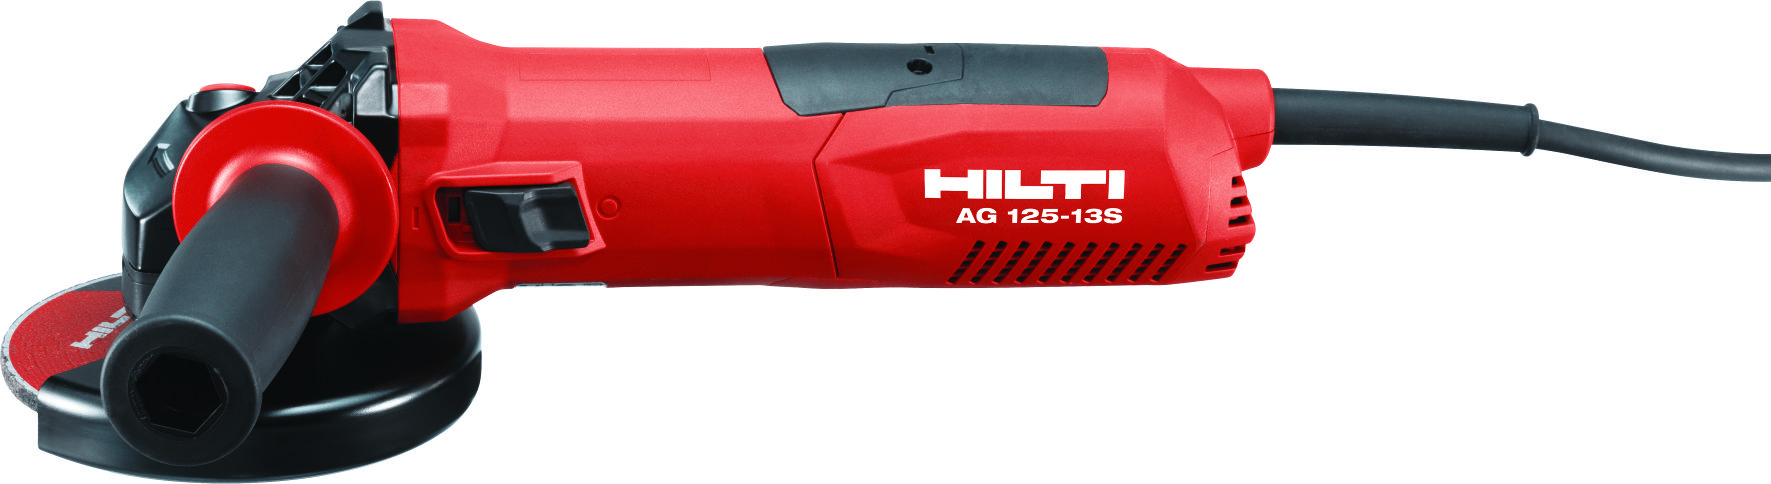 Hilti AG 125-13S